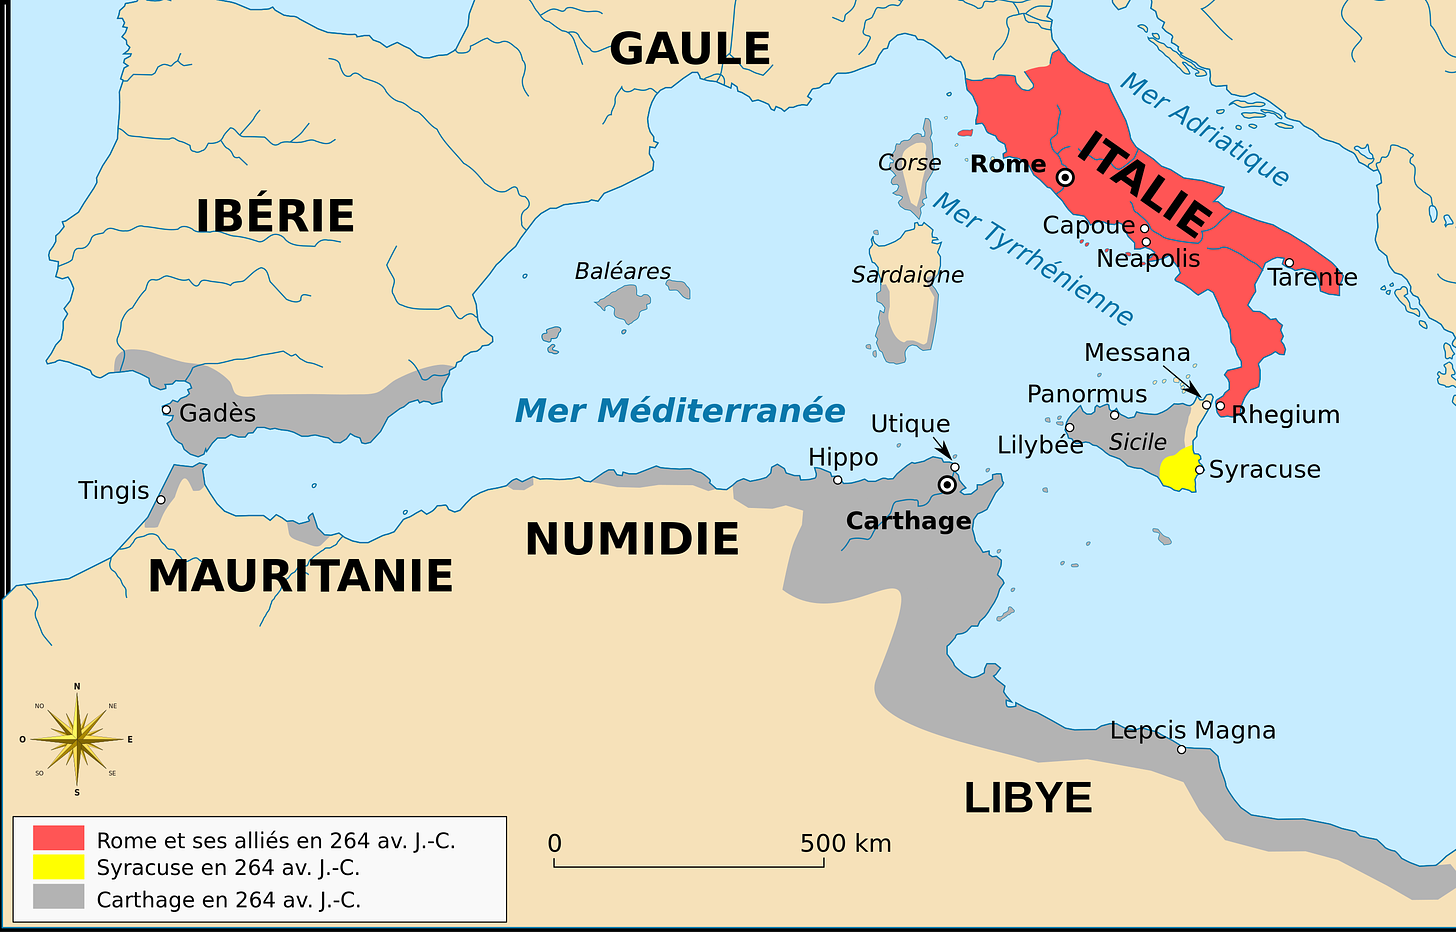 Territoires romain, syracusain et carthaginois en 264 av. J.-C. à la veille de la première guerre punique (par Augusta 89. Licence CC BY 3.0)